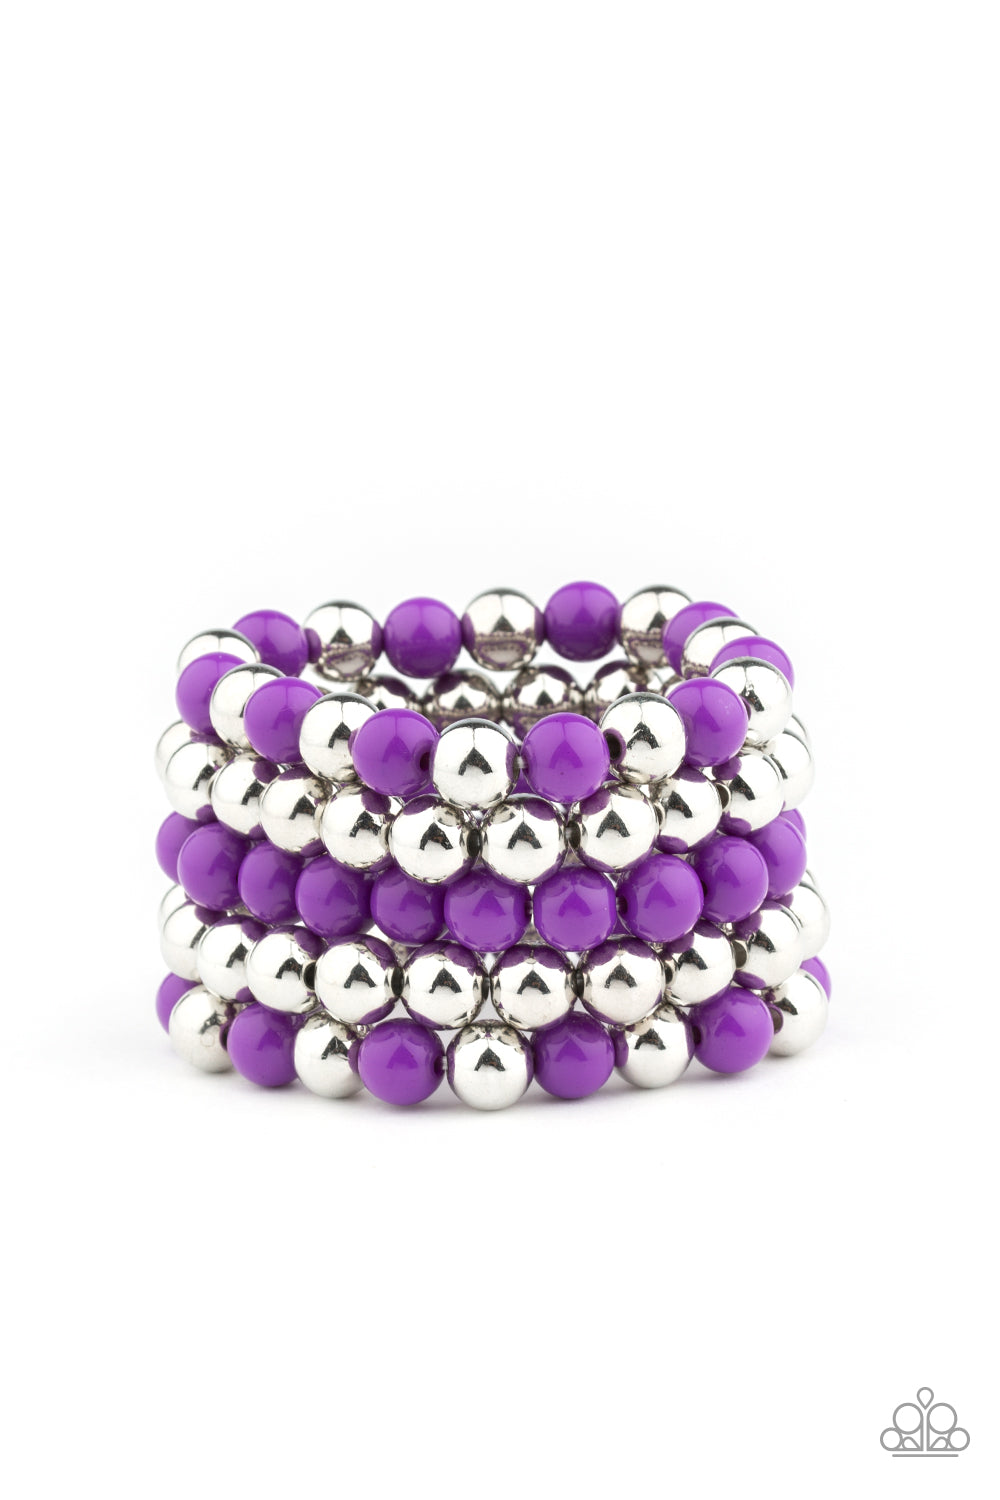 Pop-YOU-lar Culture - Purple bracelet